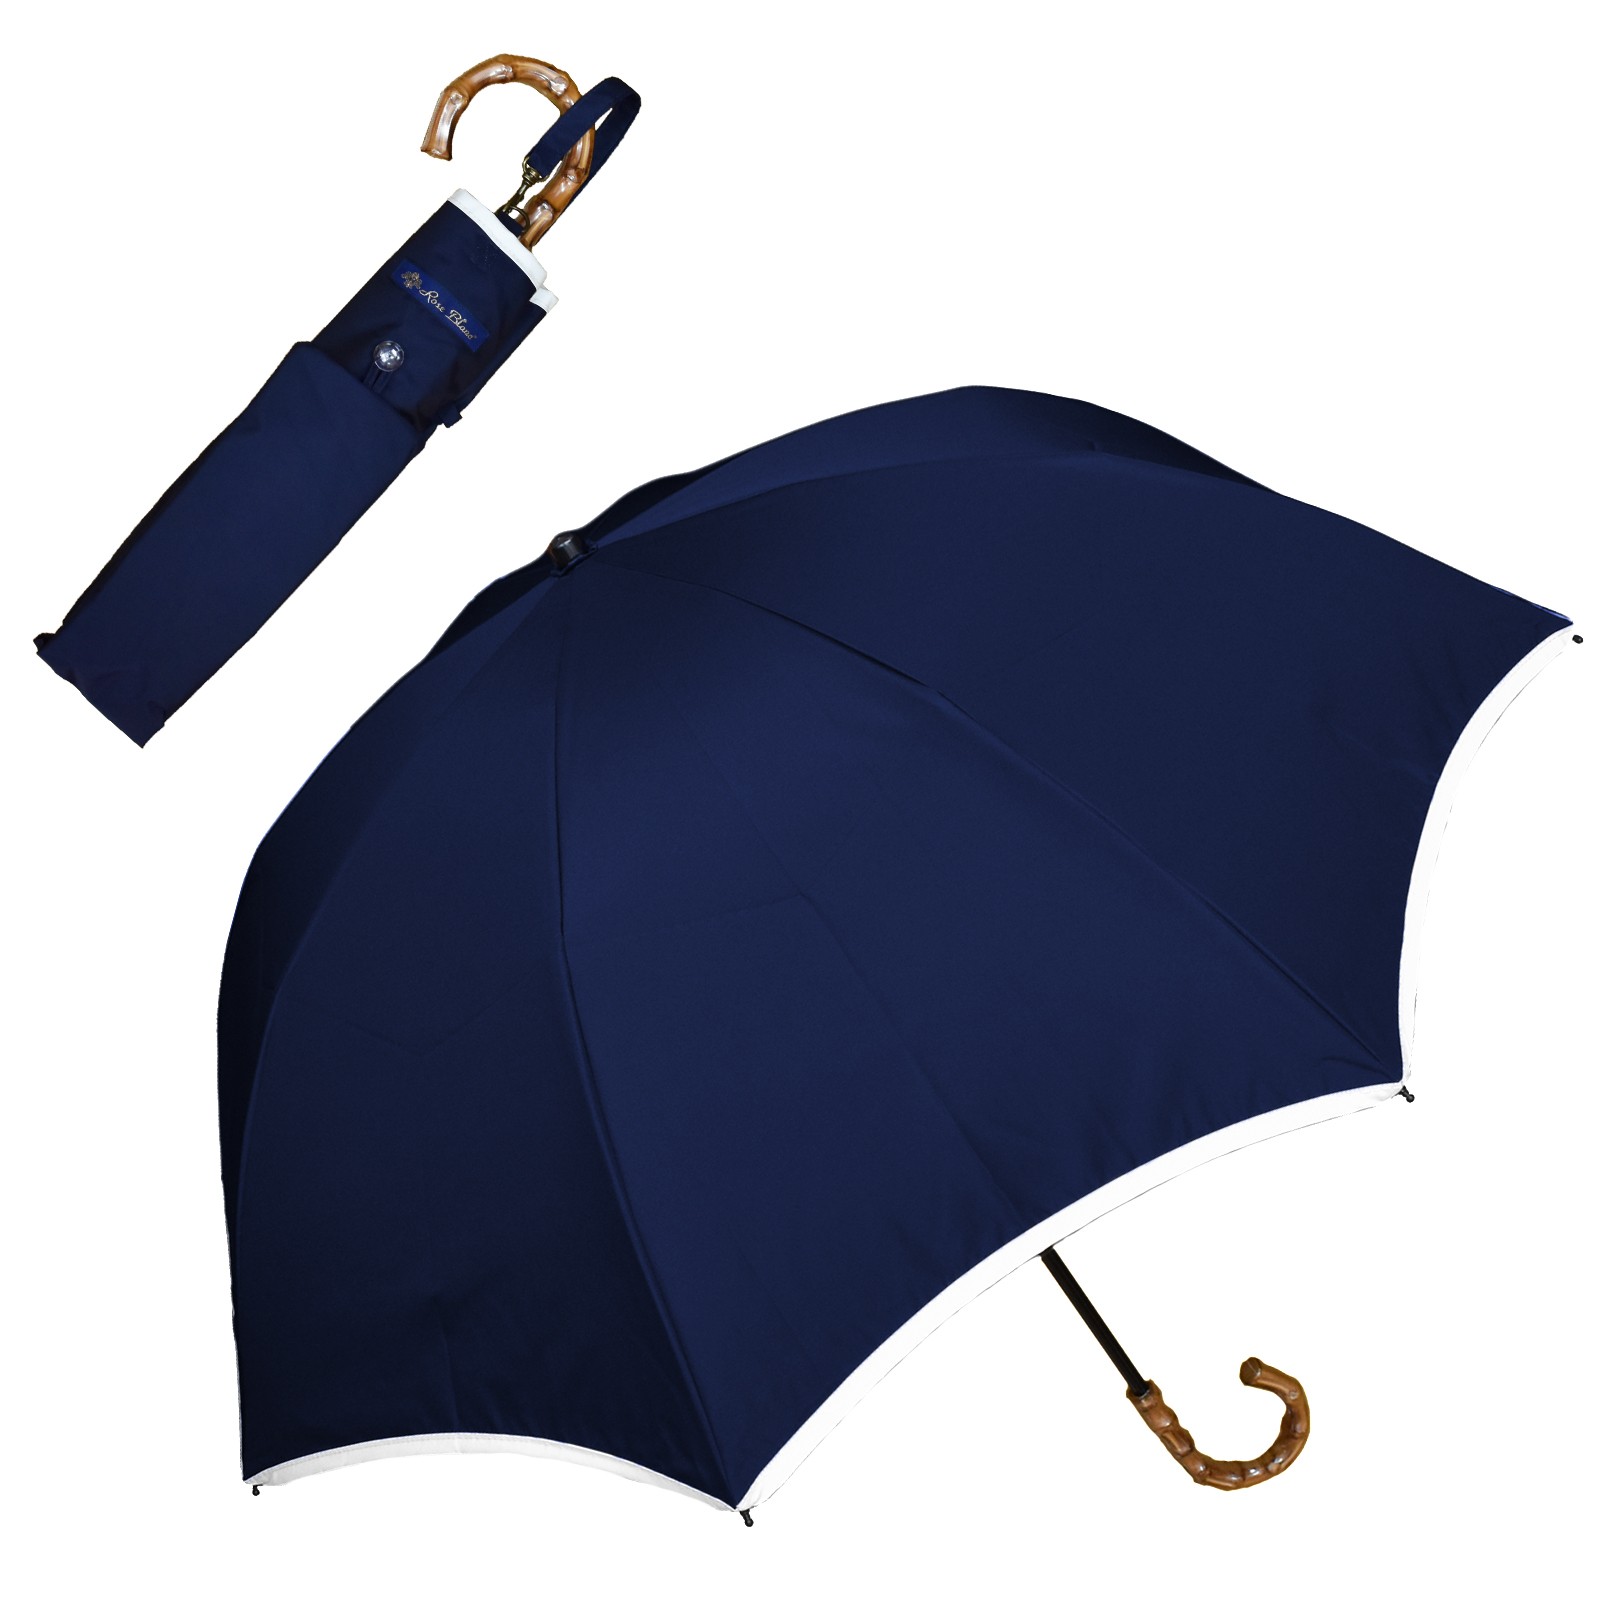 日傘 完全遮光 折りたたみ uv 晴雨兼用 軽量 2段 折りたたみ傘 遮光 100% 遮熱 おしゃれ...